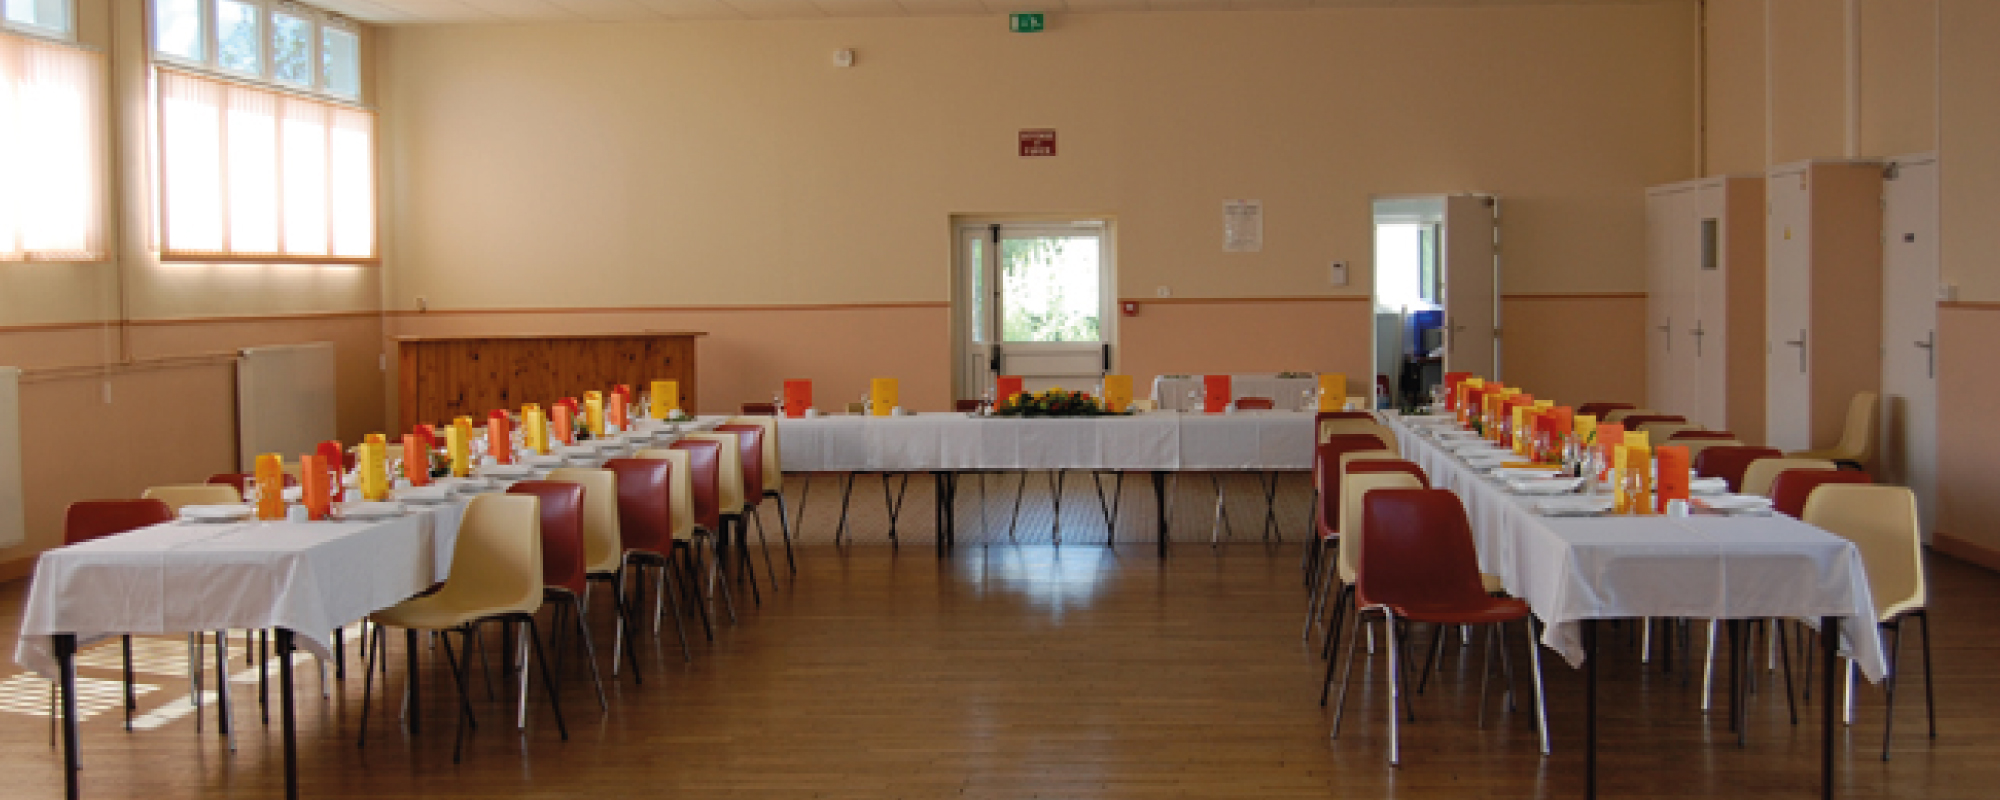 Location de salles des fêtes ou mariage à Chapelle Royale en Eure et Loir dans le Perche